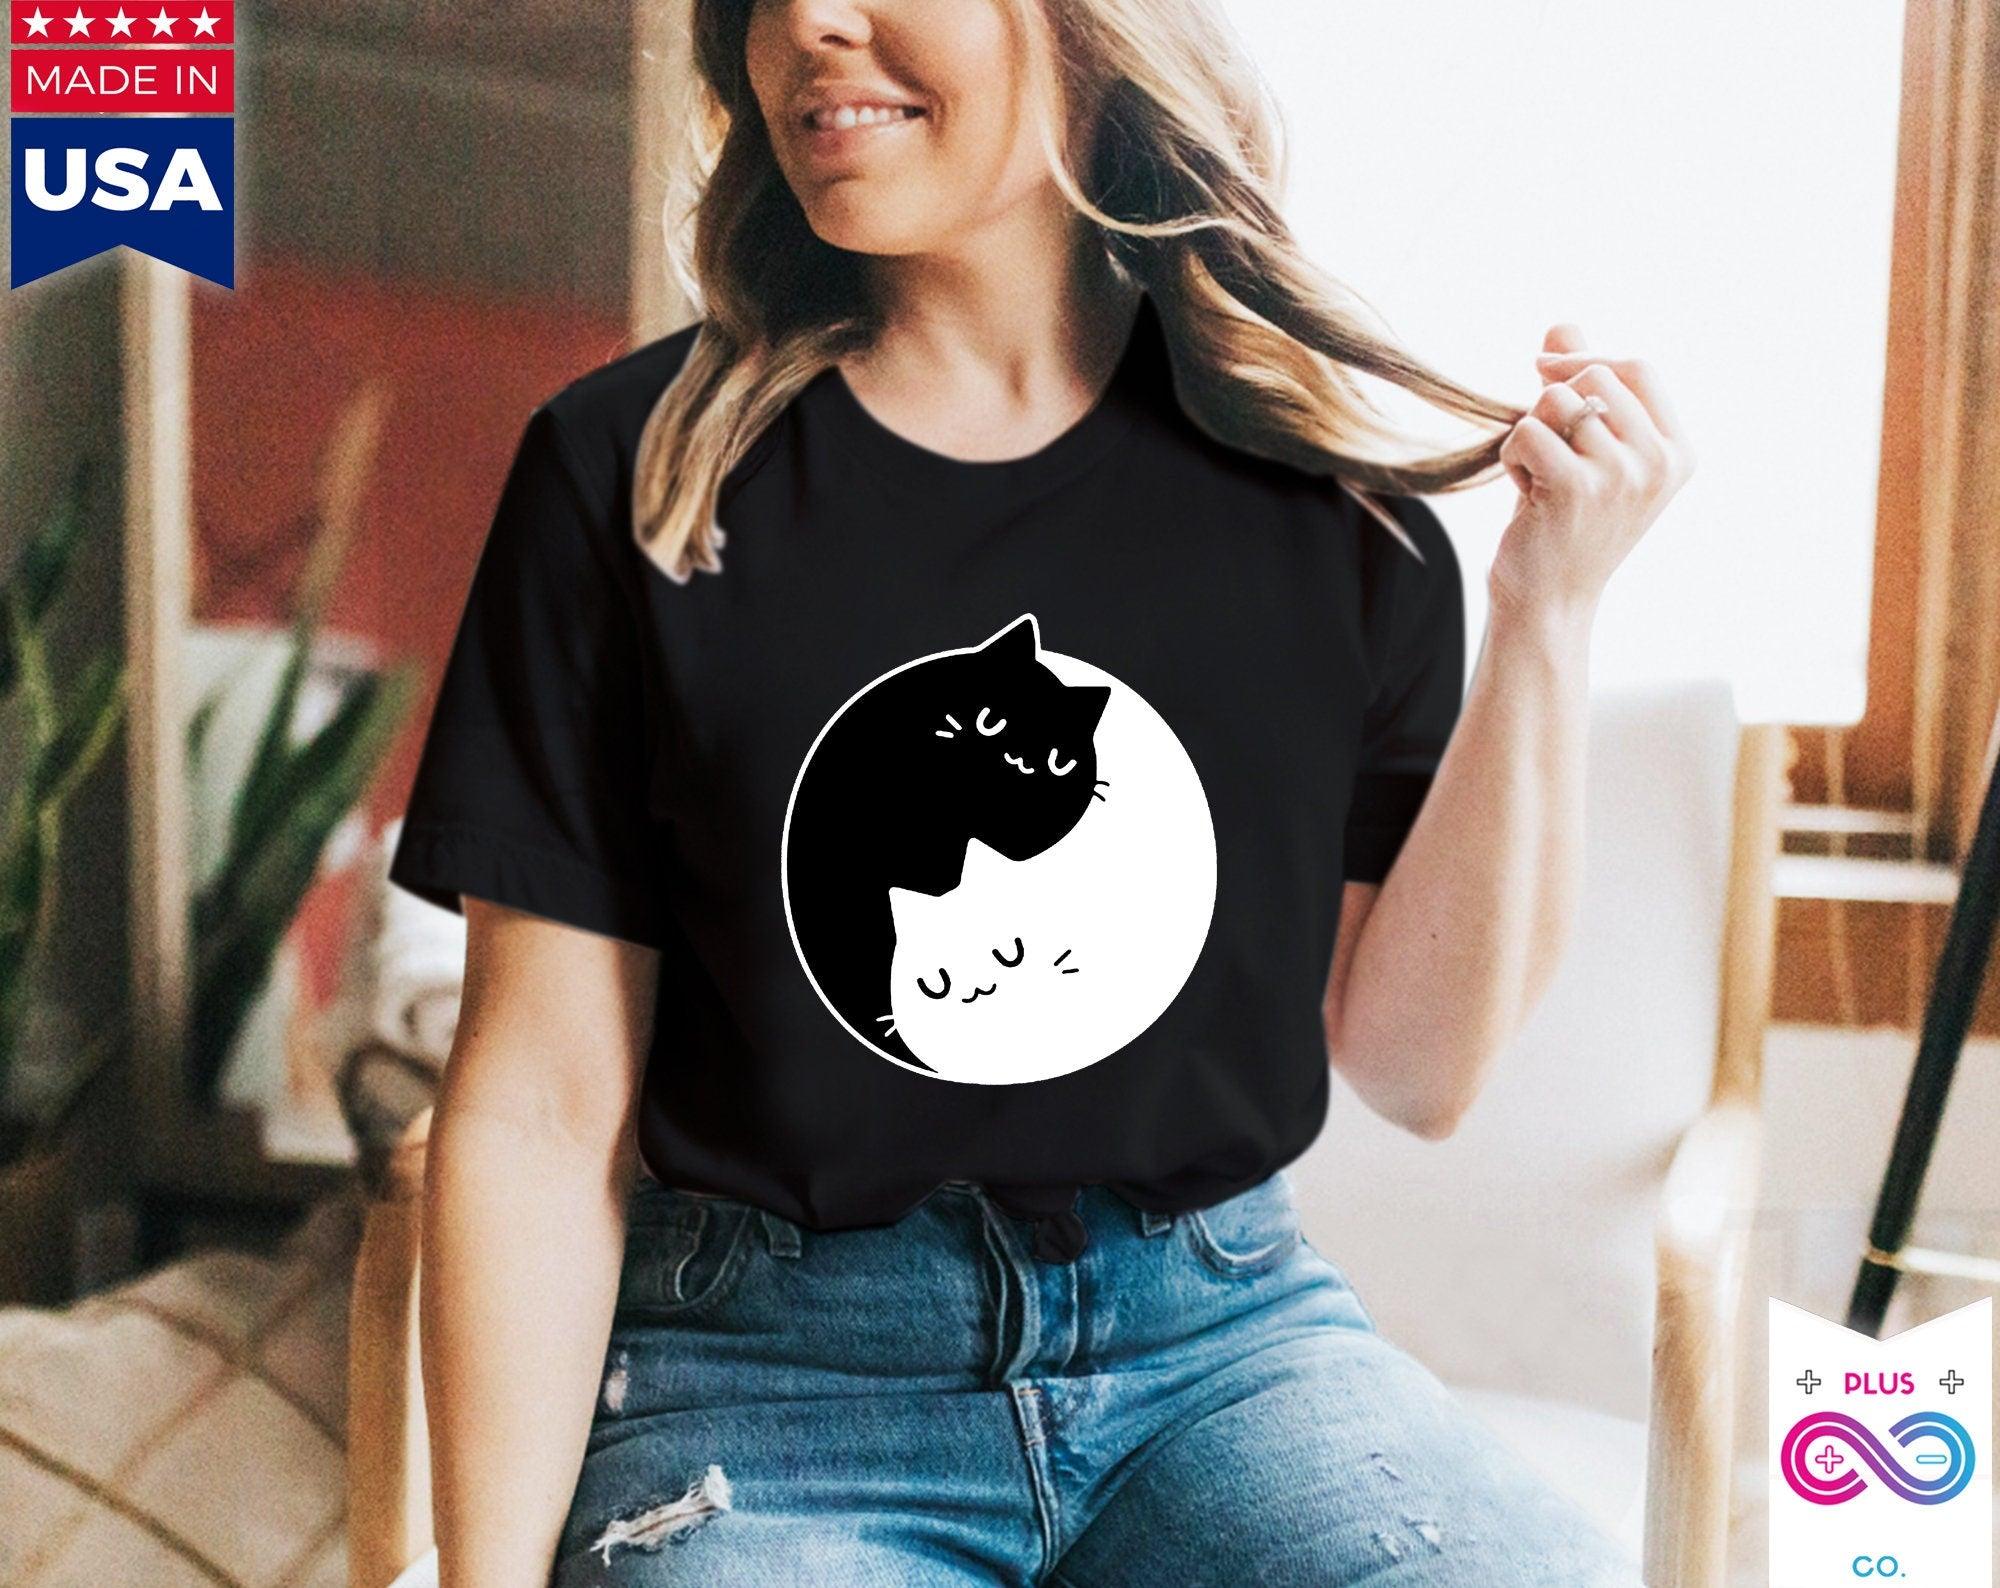 Camisetas de gatos Yin Yang, Dualidad Yin Yang || Gatos Yin Yang || Regalo perfecto - SML Xl - Damas, Hombres Unisex || Ideas de regalos para parejas de mejores amigas, camiseta para mamá gato, camisetas - plusminusco.com